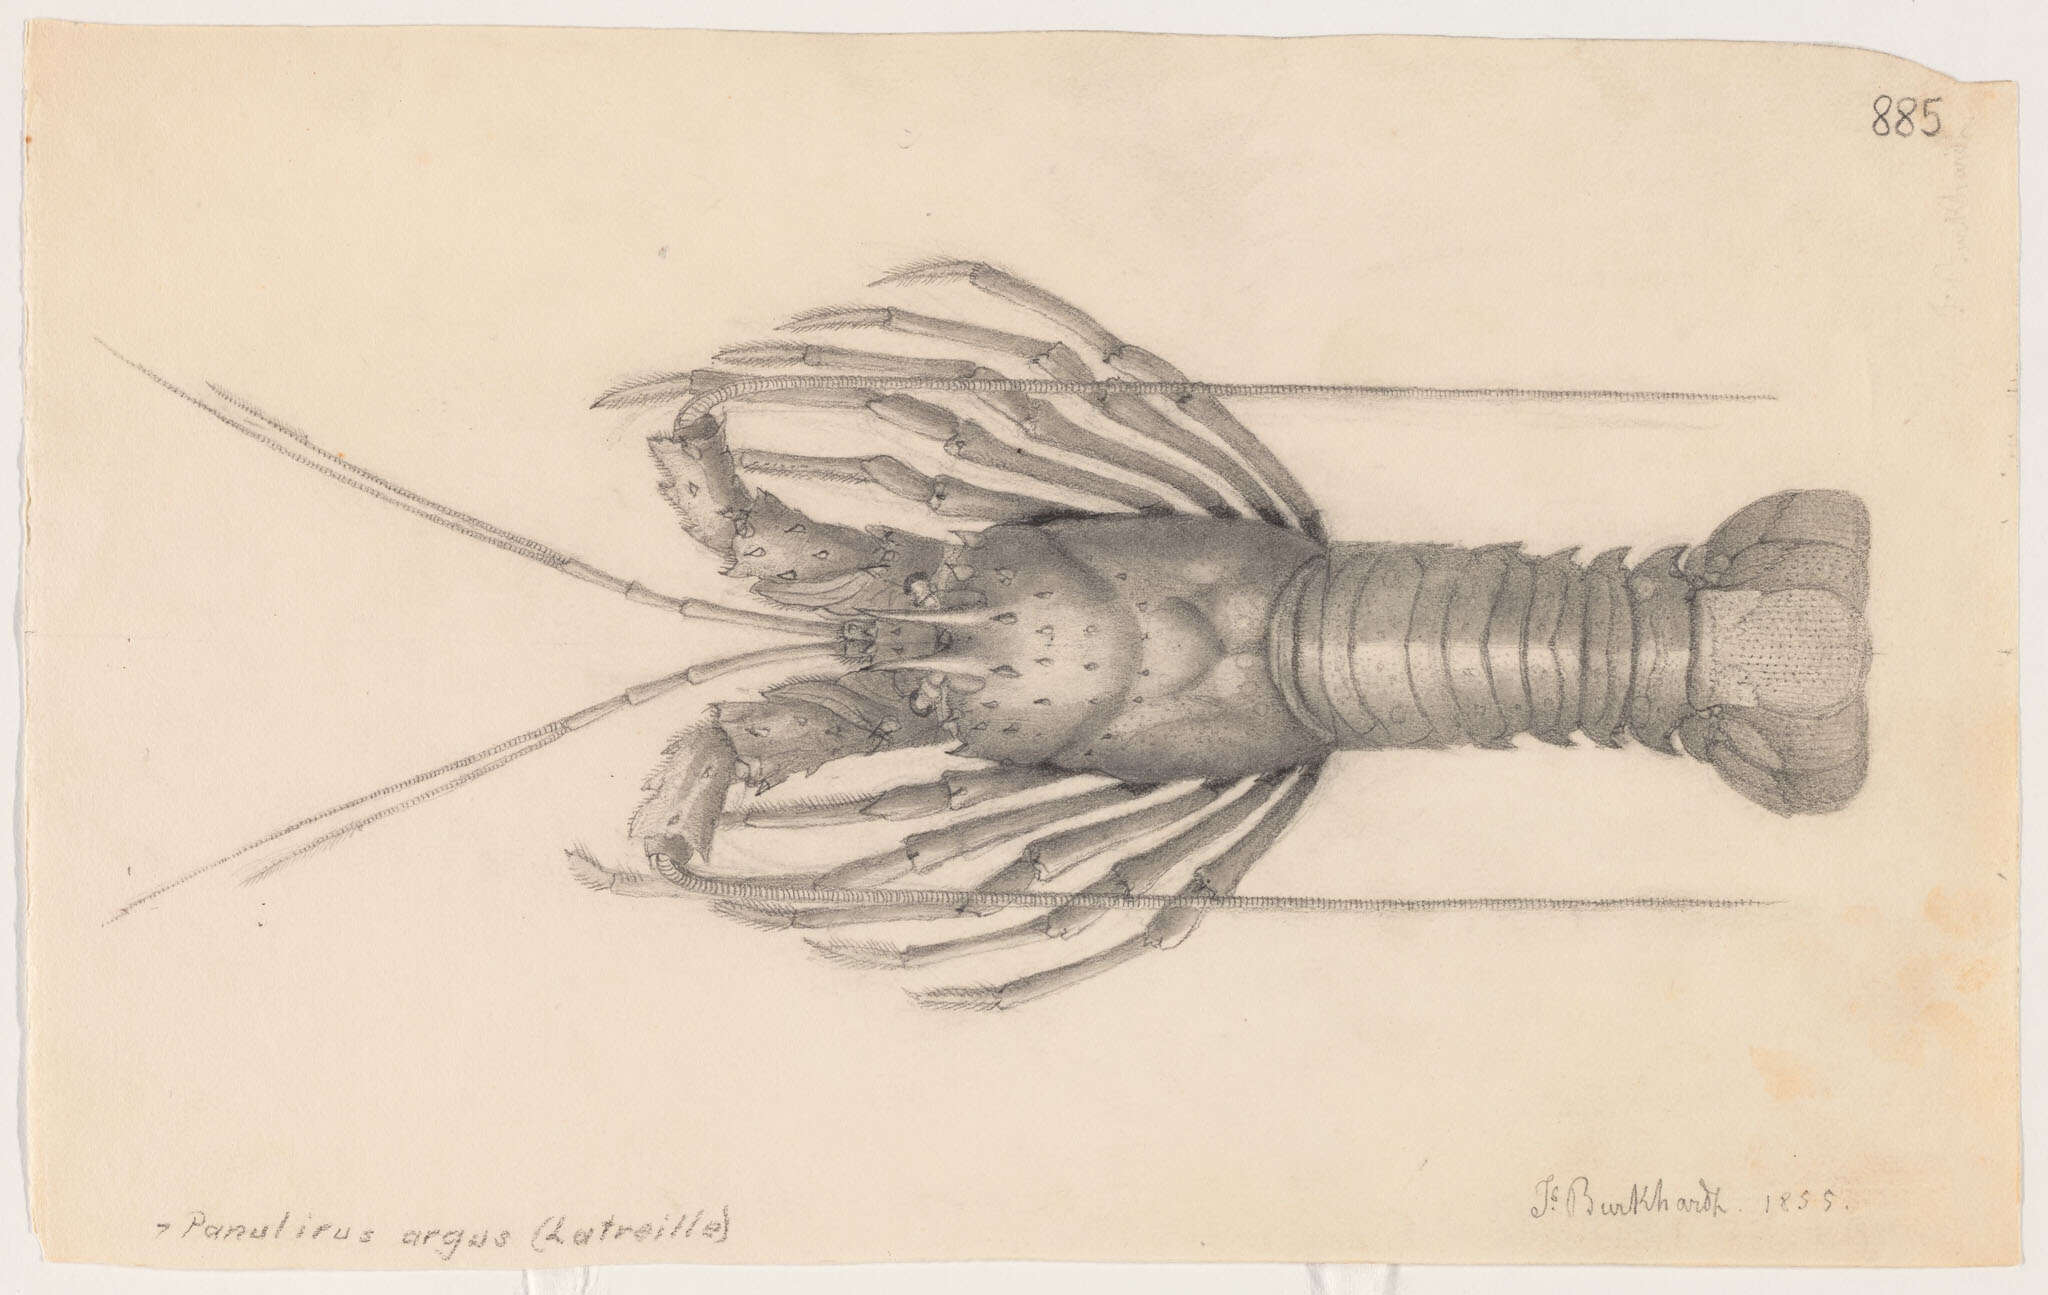 Sivun Palinuridae Latreille 1802 kuva